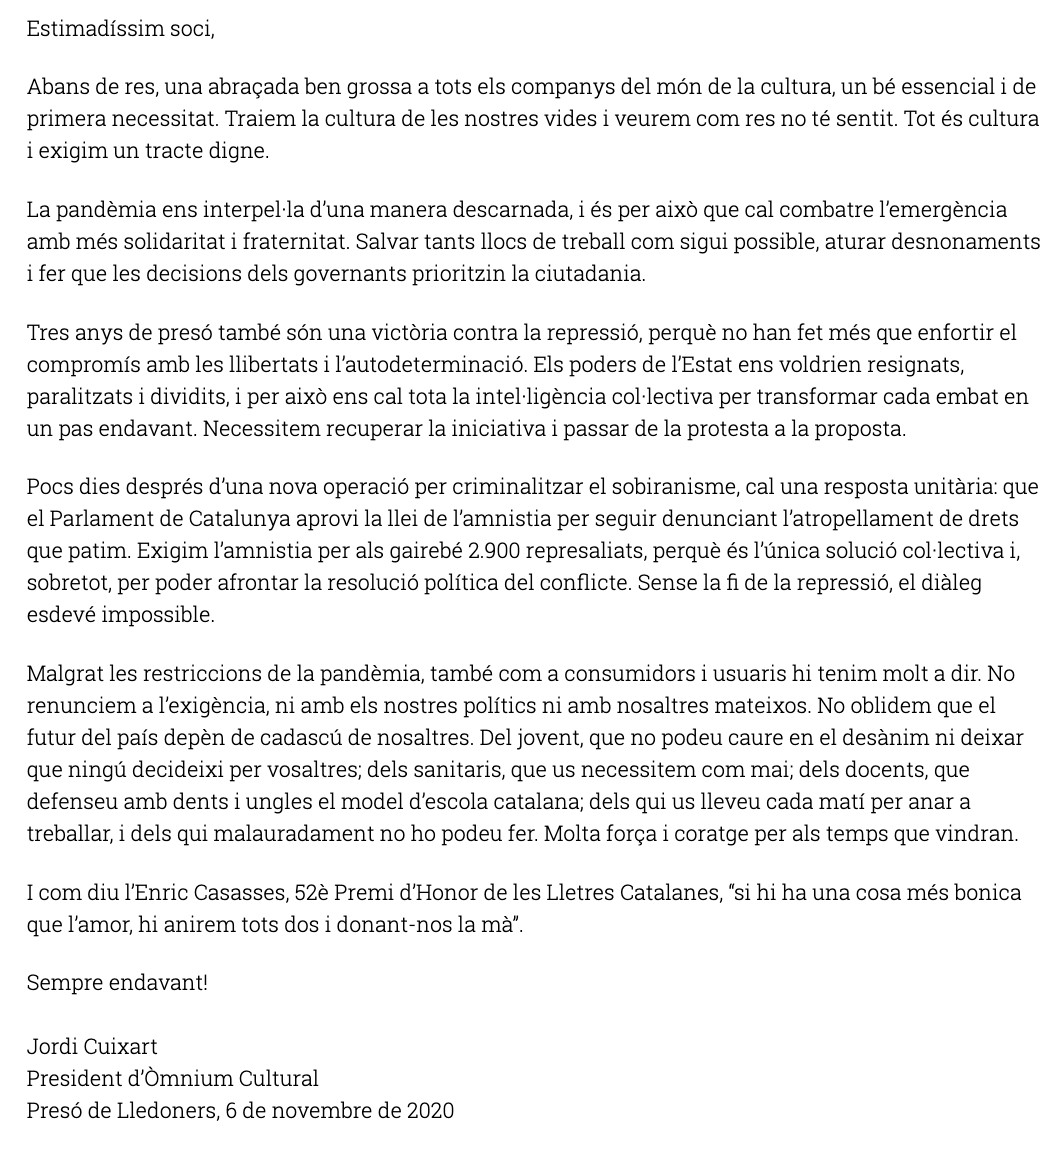 Carta de Jordi Cuixart a los socios de Òmnium Cultural / ÒMNIUM